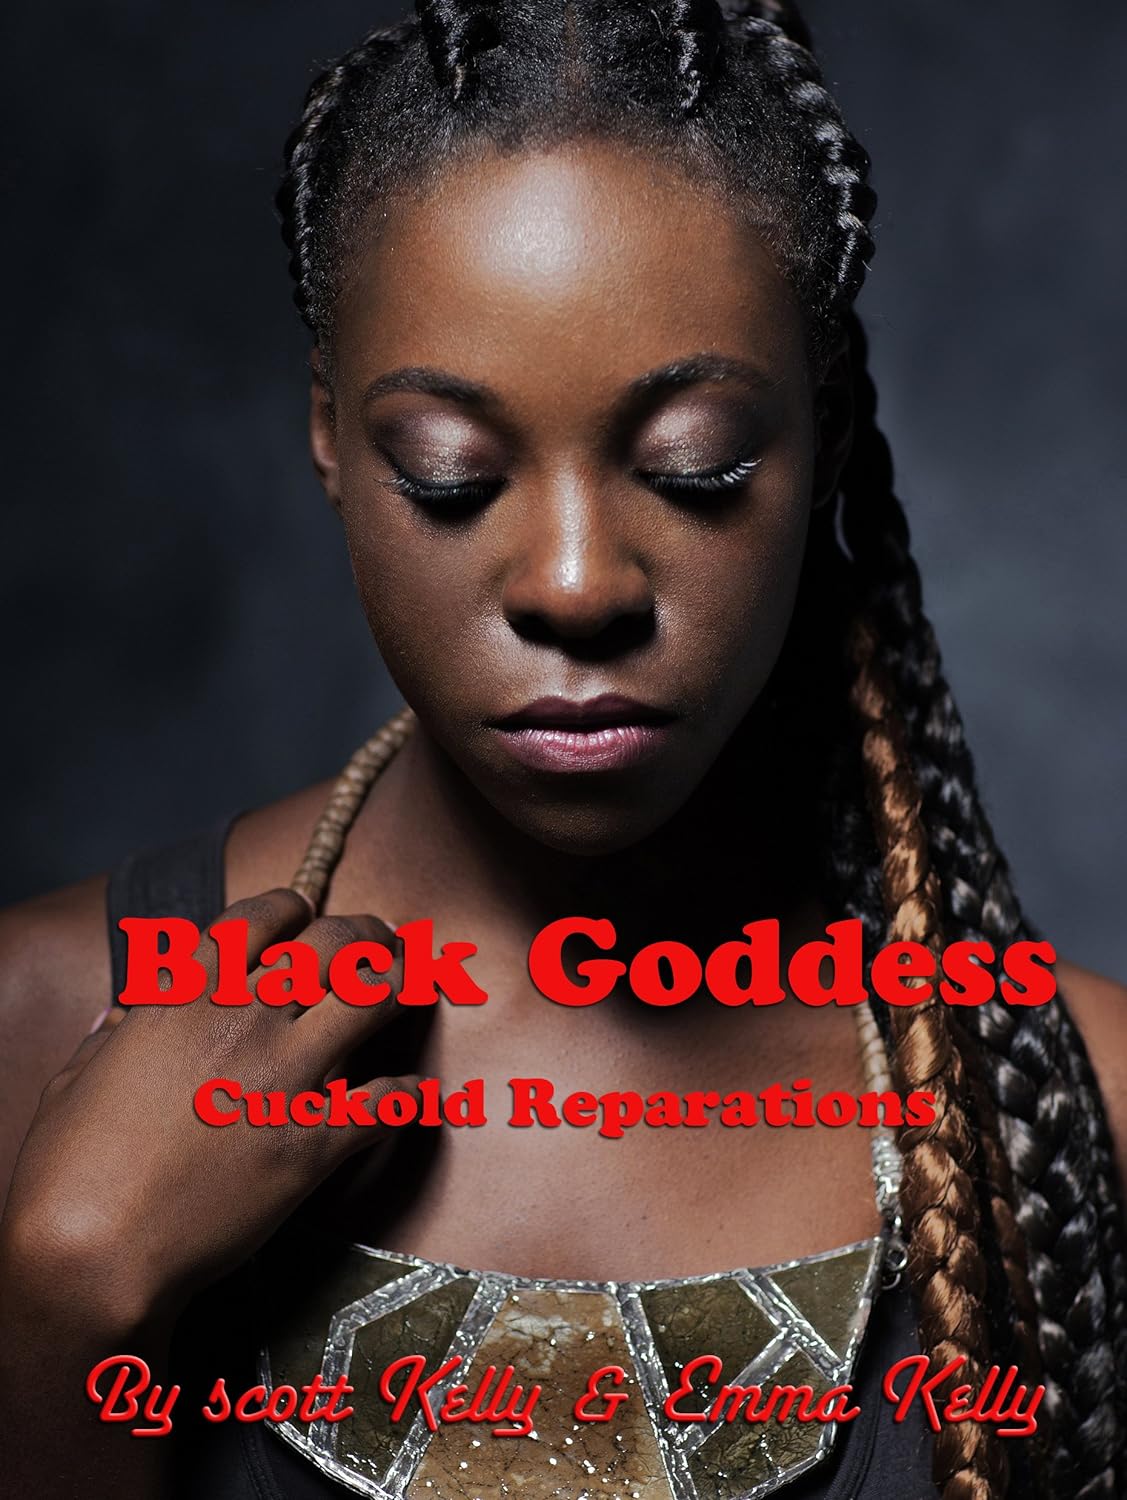 Black Femdom Goddess the holle